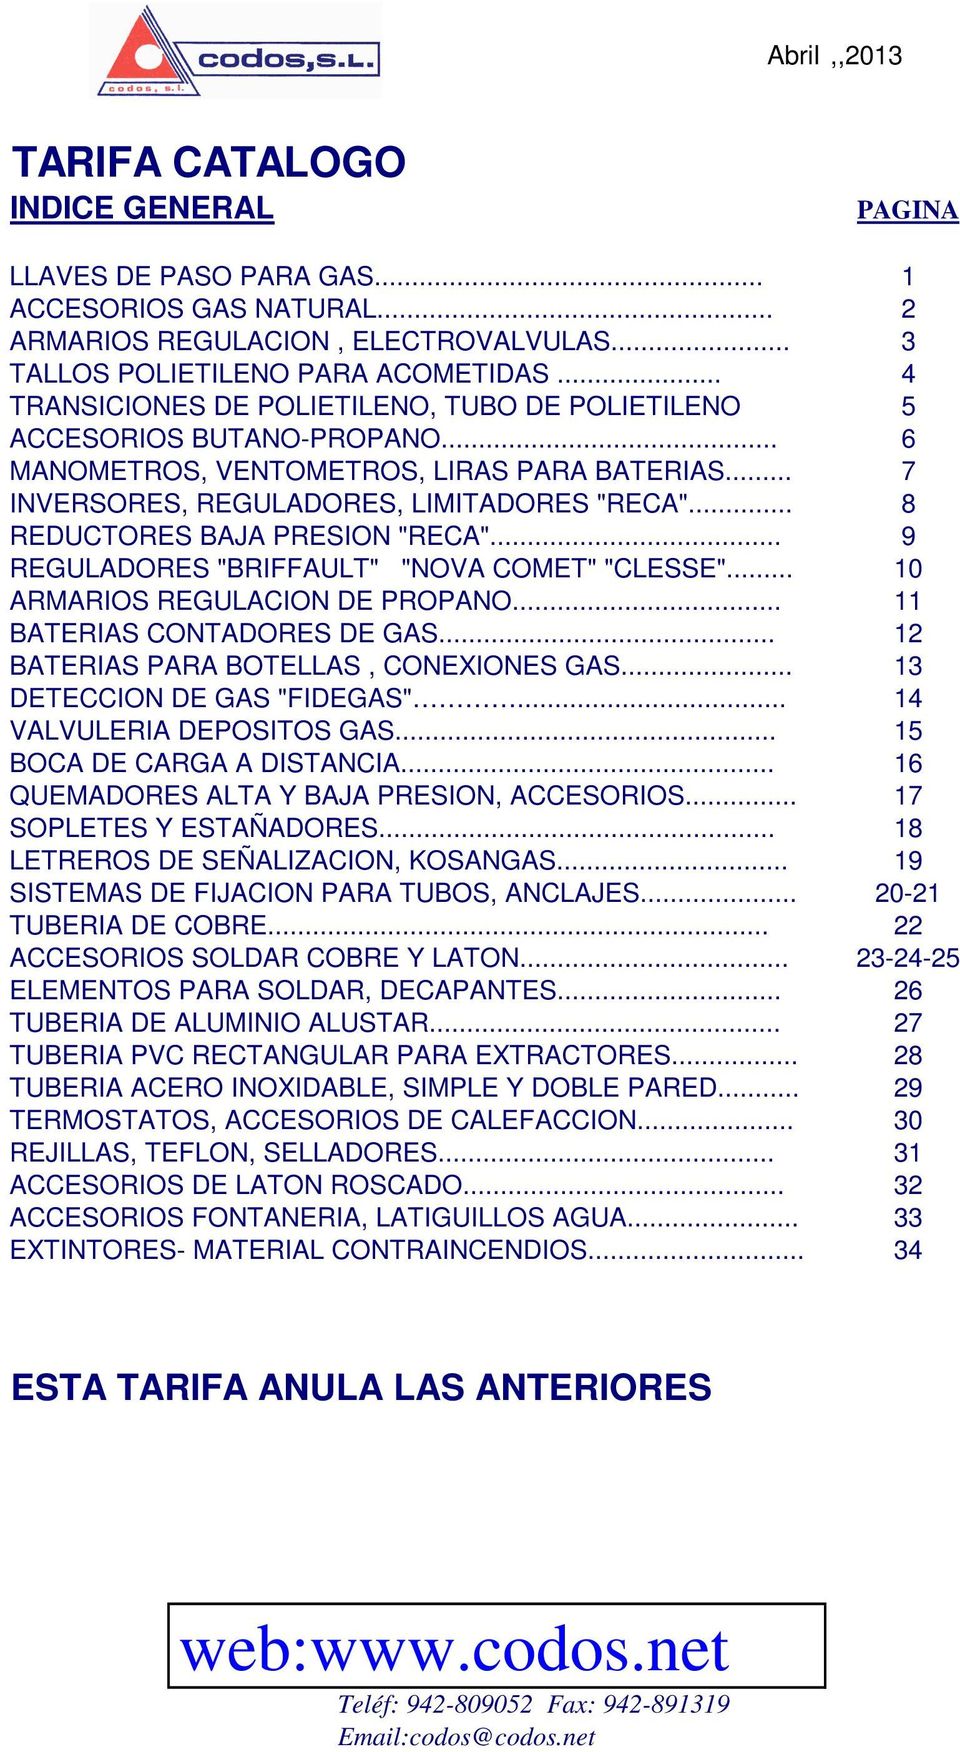 .. 8 REDUCTORES BAJA PRESION "RECA"... 9 REGULADORES "BRIFFAULT" "NOVA COMET" "CLESSE"... 10 ARMARIOS REGULACION DE PROPANO... 11 BATERIAS CONTADORES DE GAS... 12 BATERIAS PARA BOTELLAS, CONEXIONES GAS.